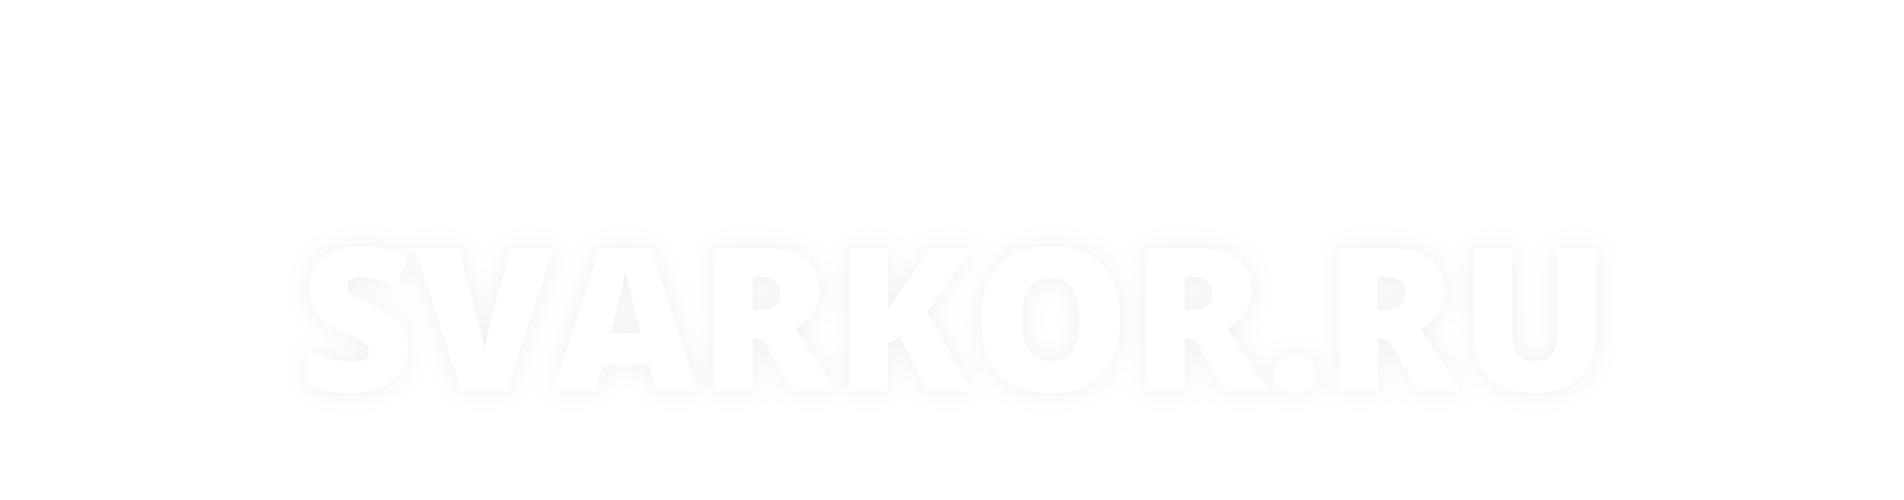 Создан сайт интернет-магазина Сваркор